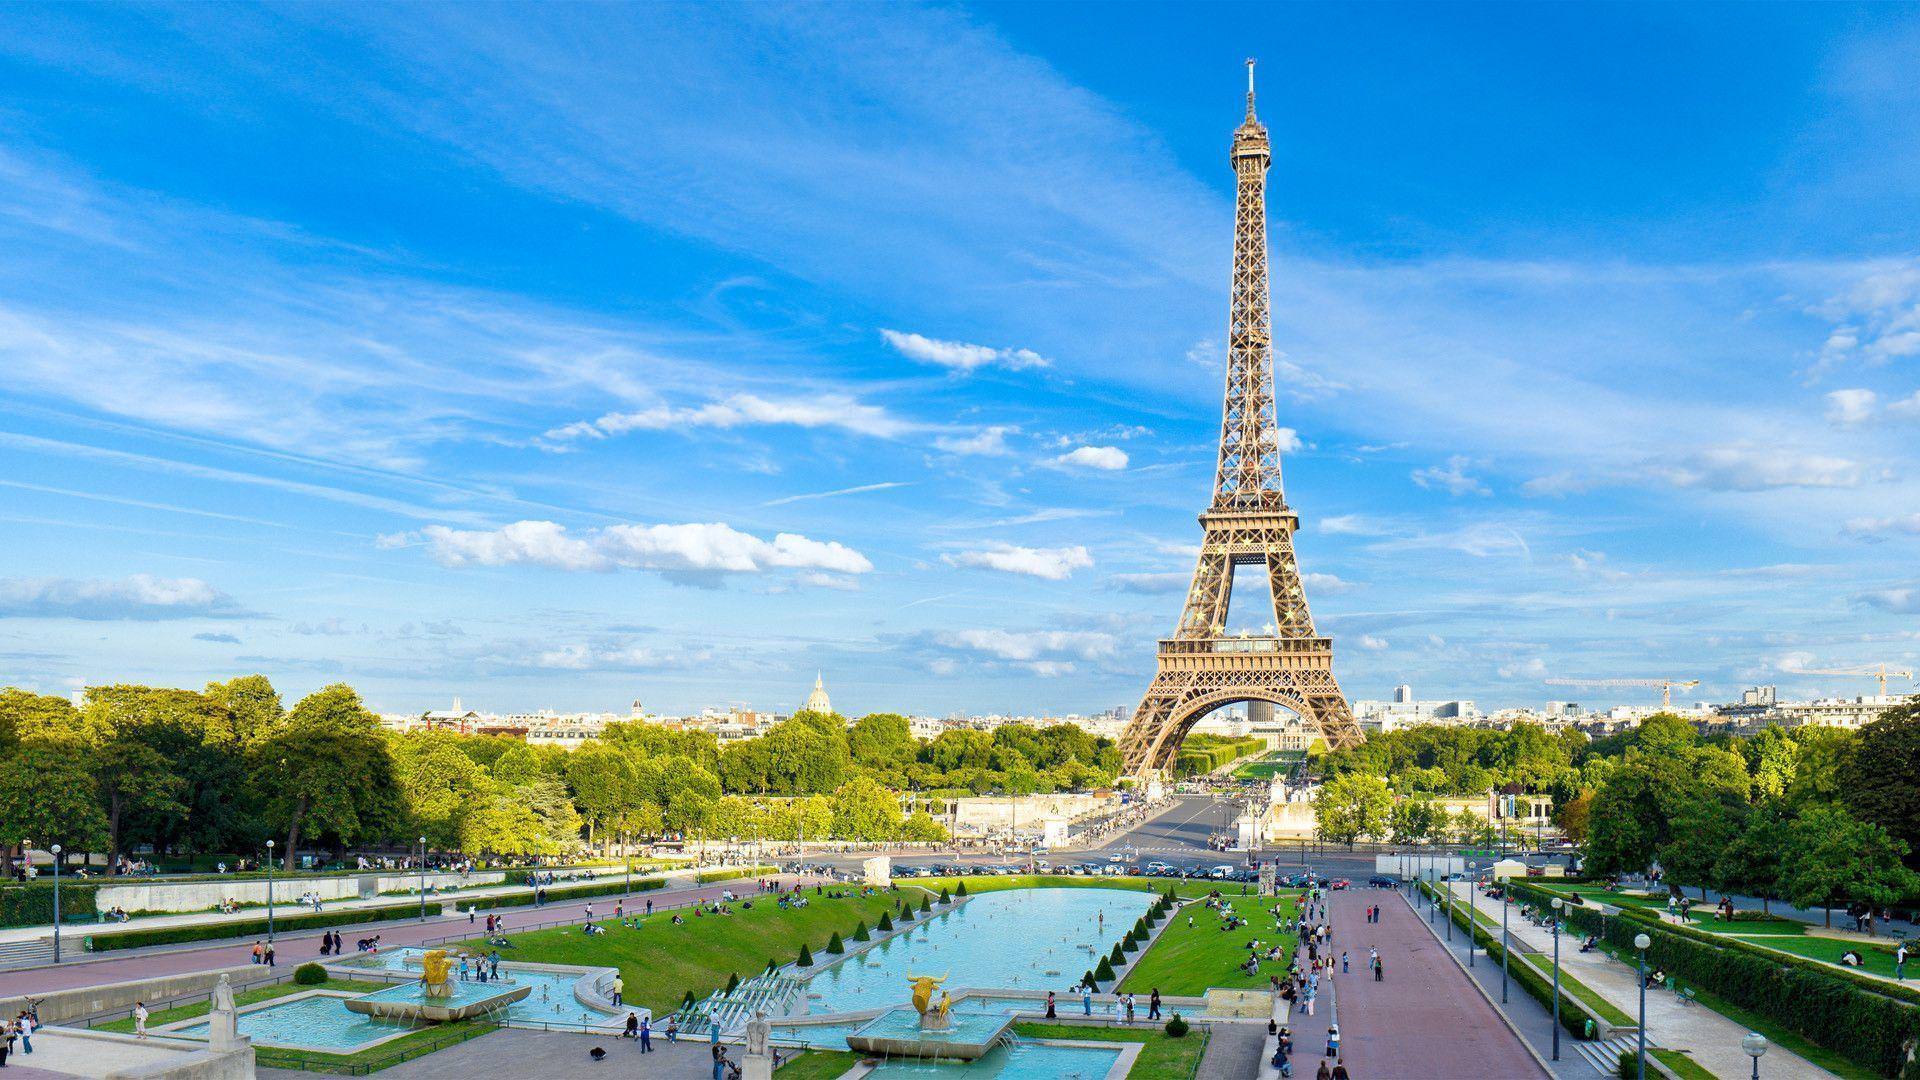 The Beauty Of The Eiffel Tower - Torre Eiffel Hd 4k , HD Wallpaper & Backgrounds